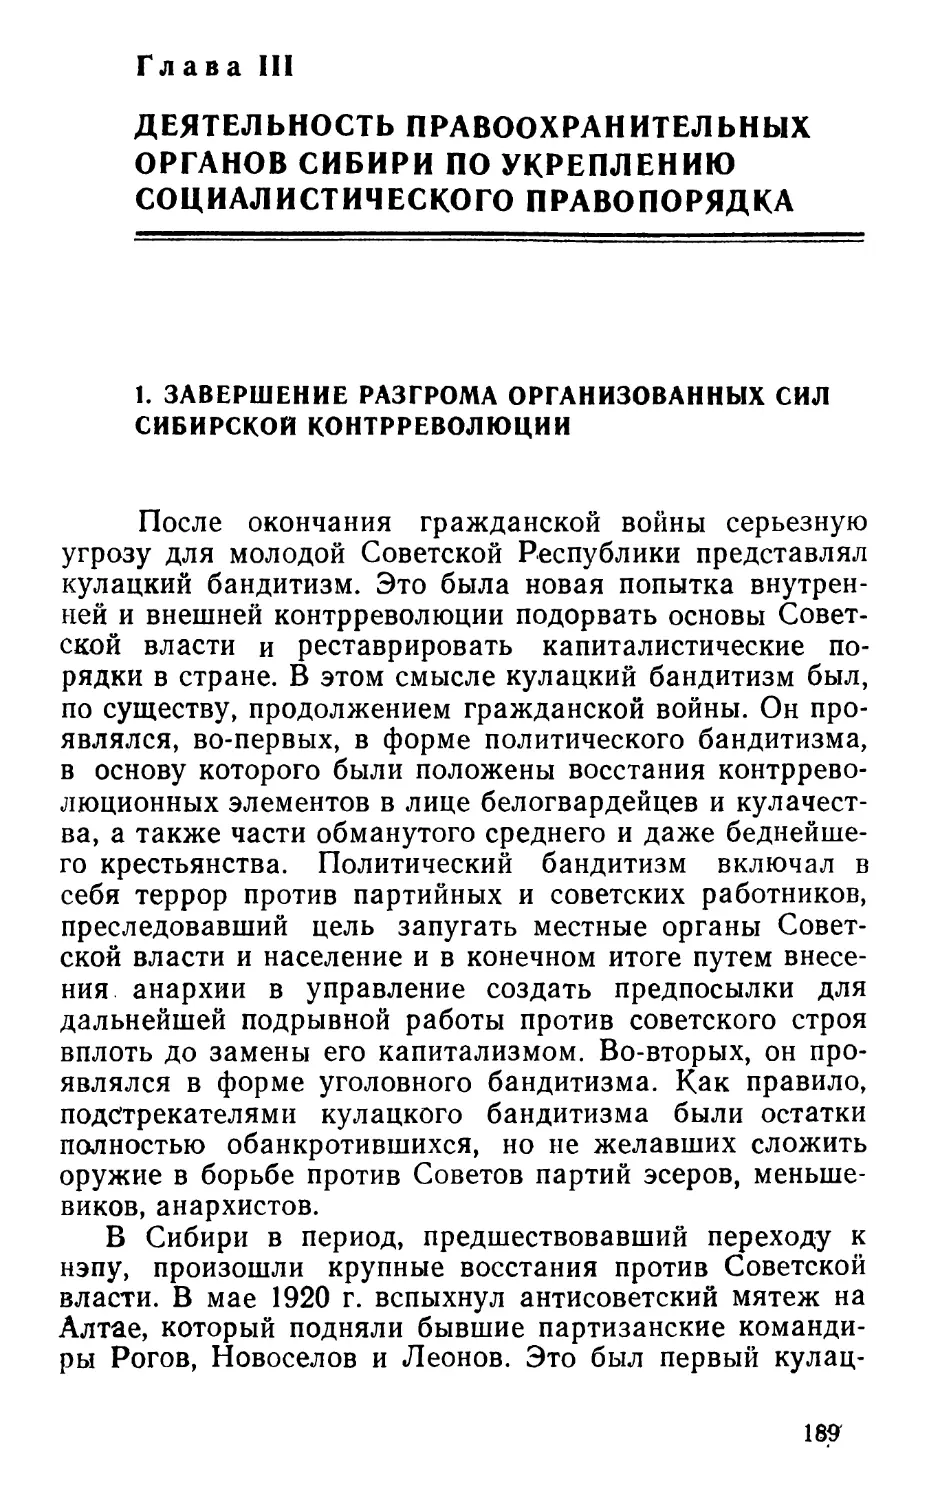 Глава III. Деятельность правоохранительных органов Сибири по укреплению социалистического правопорядка